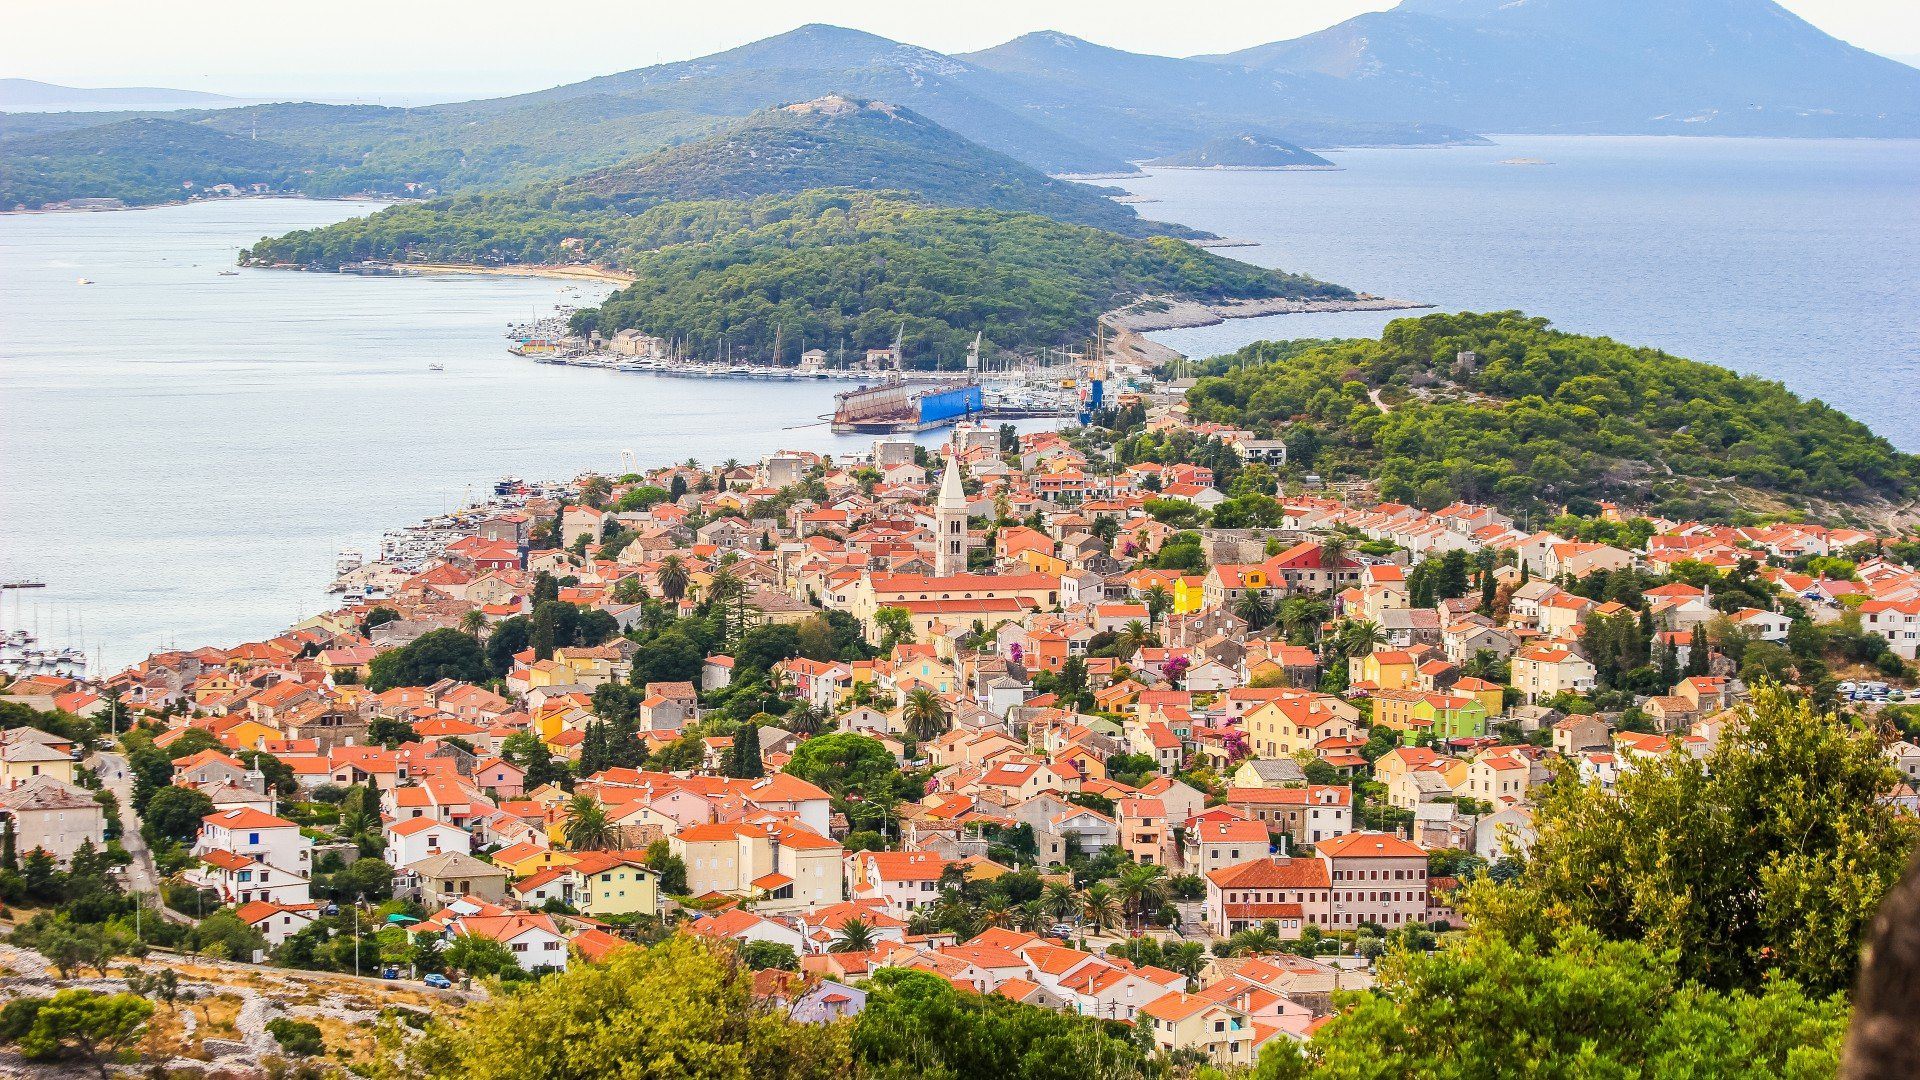 Lošinj - Adriatic Sea | Croatia Cruise Croatia Cruise